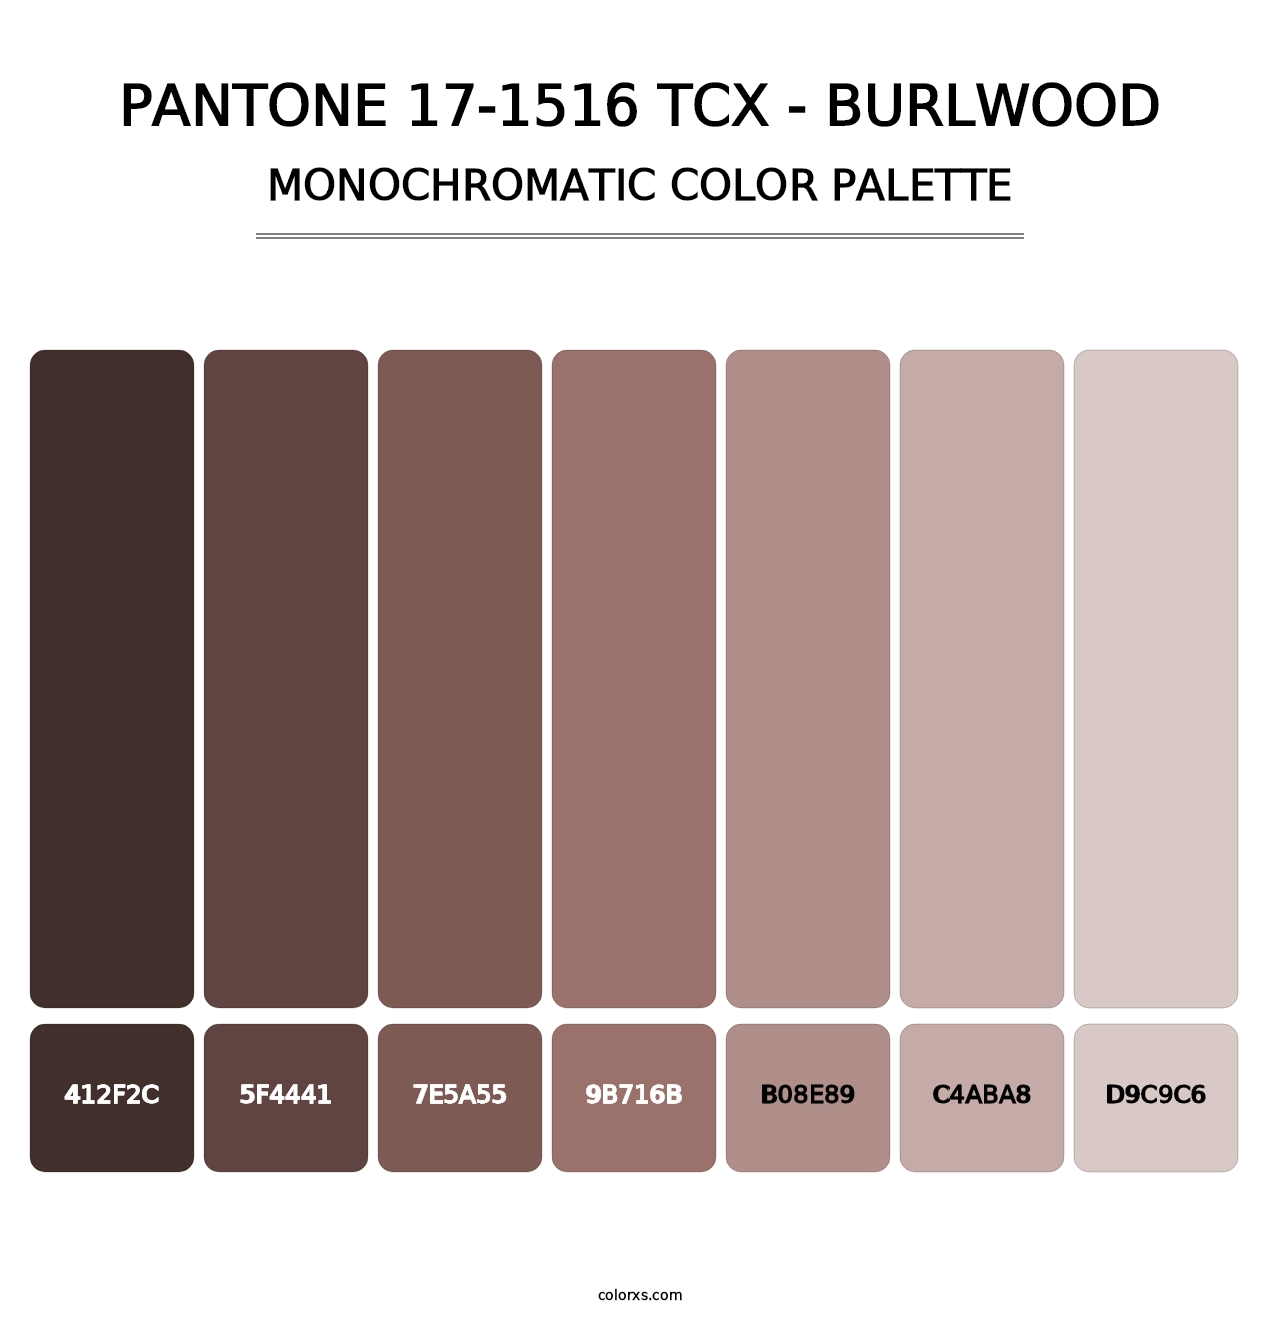 PANTONE 17-1516 TCX - Burlwood - Monochromatic Color Palette